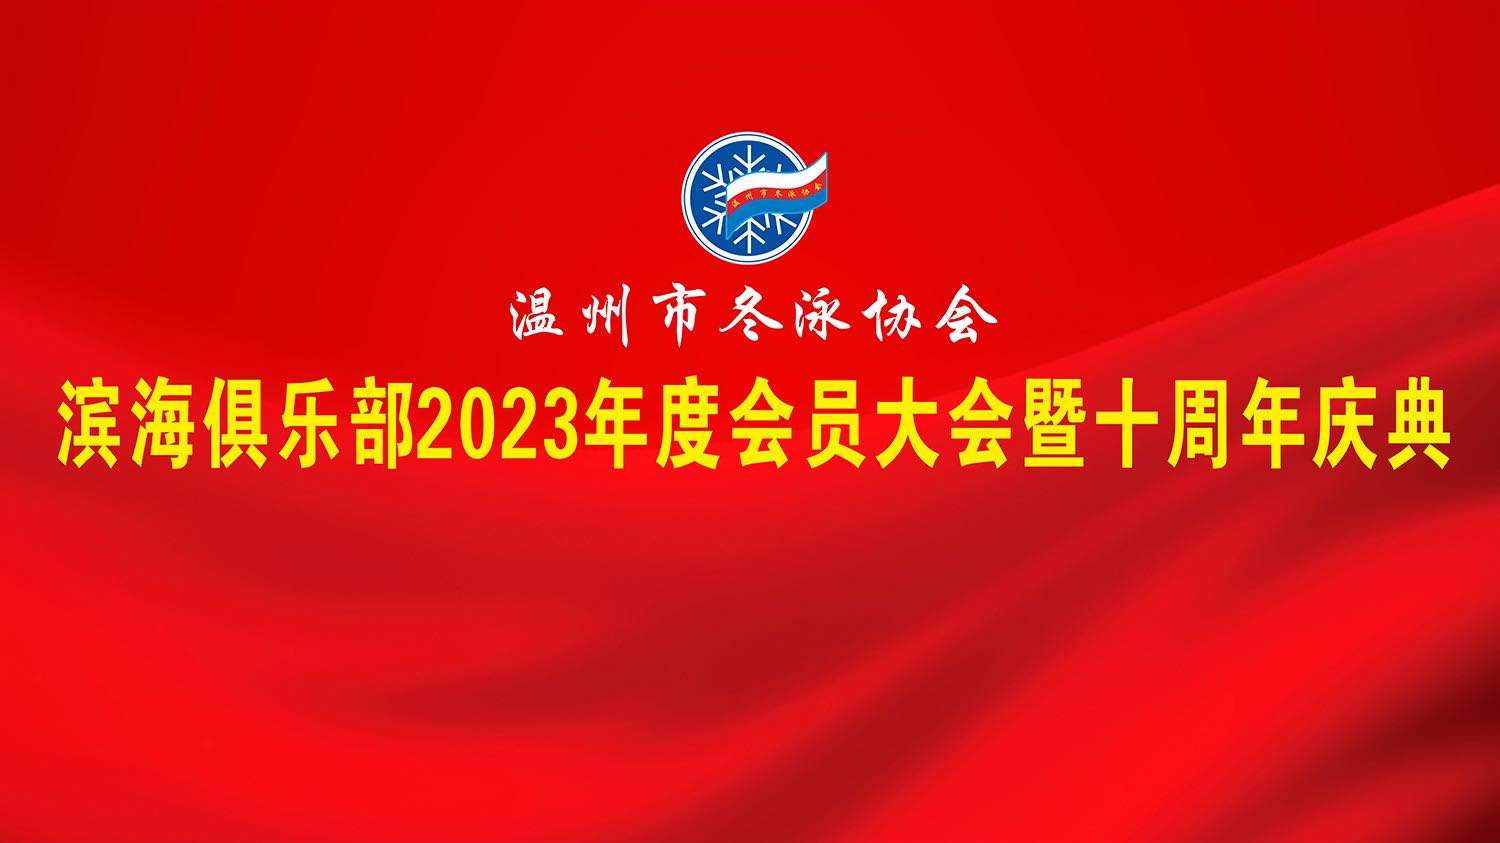 温州市冬泳协会滨海俱乐部2023年度会员大会暨十周年庆典